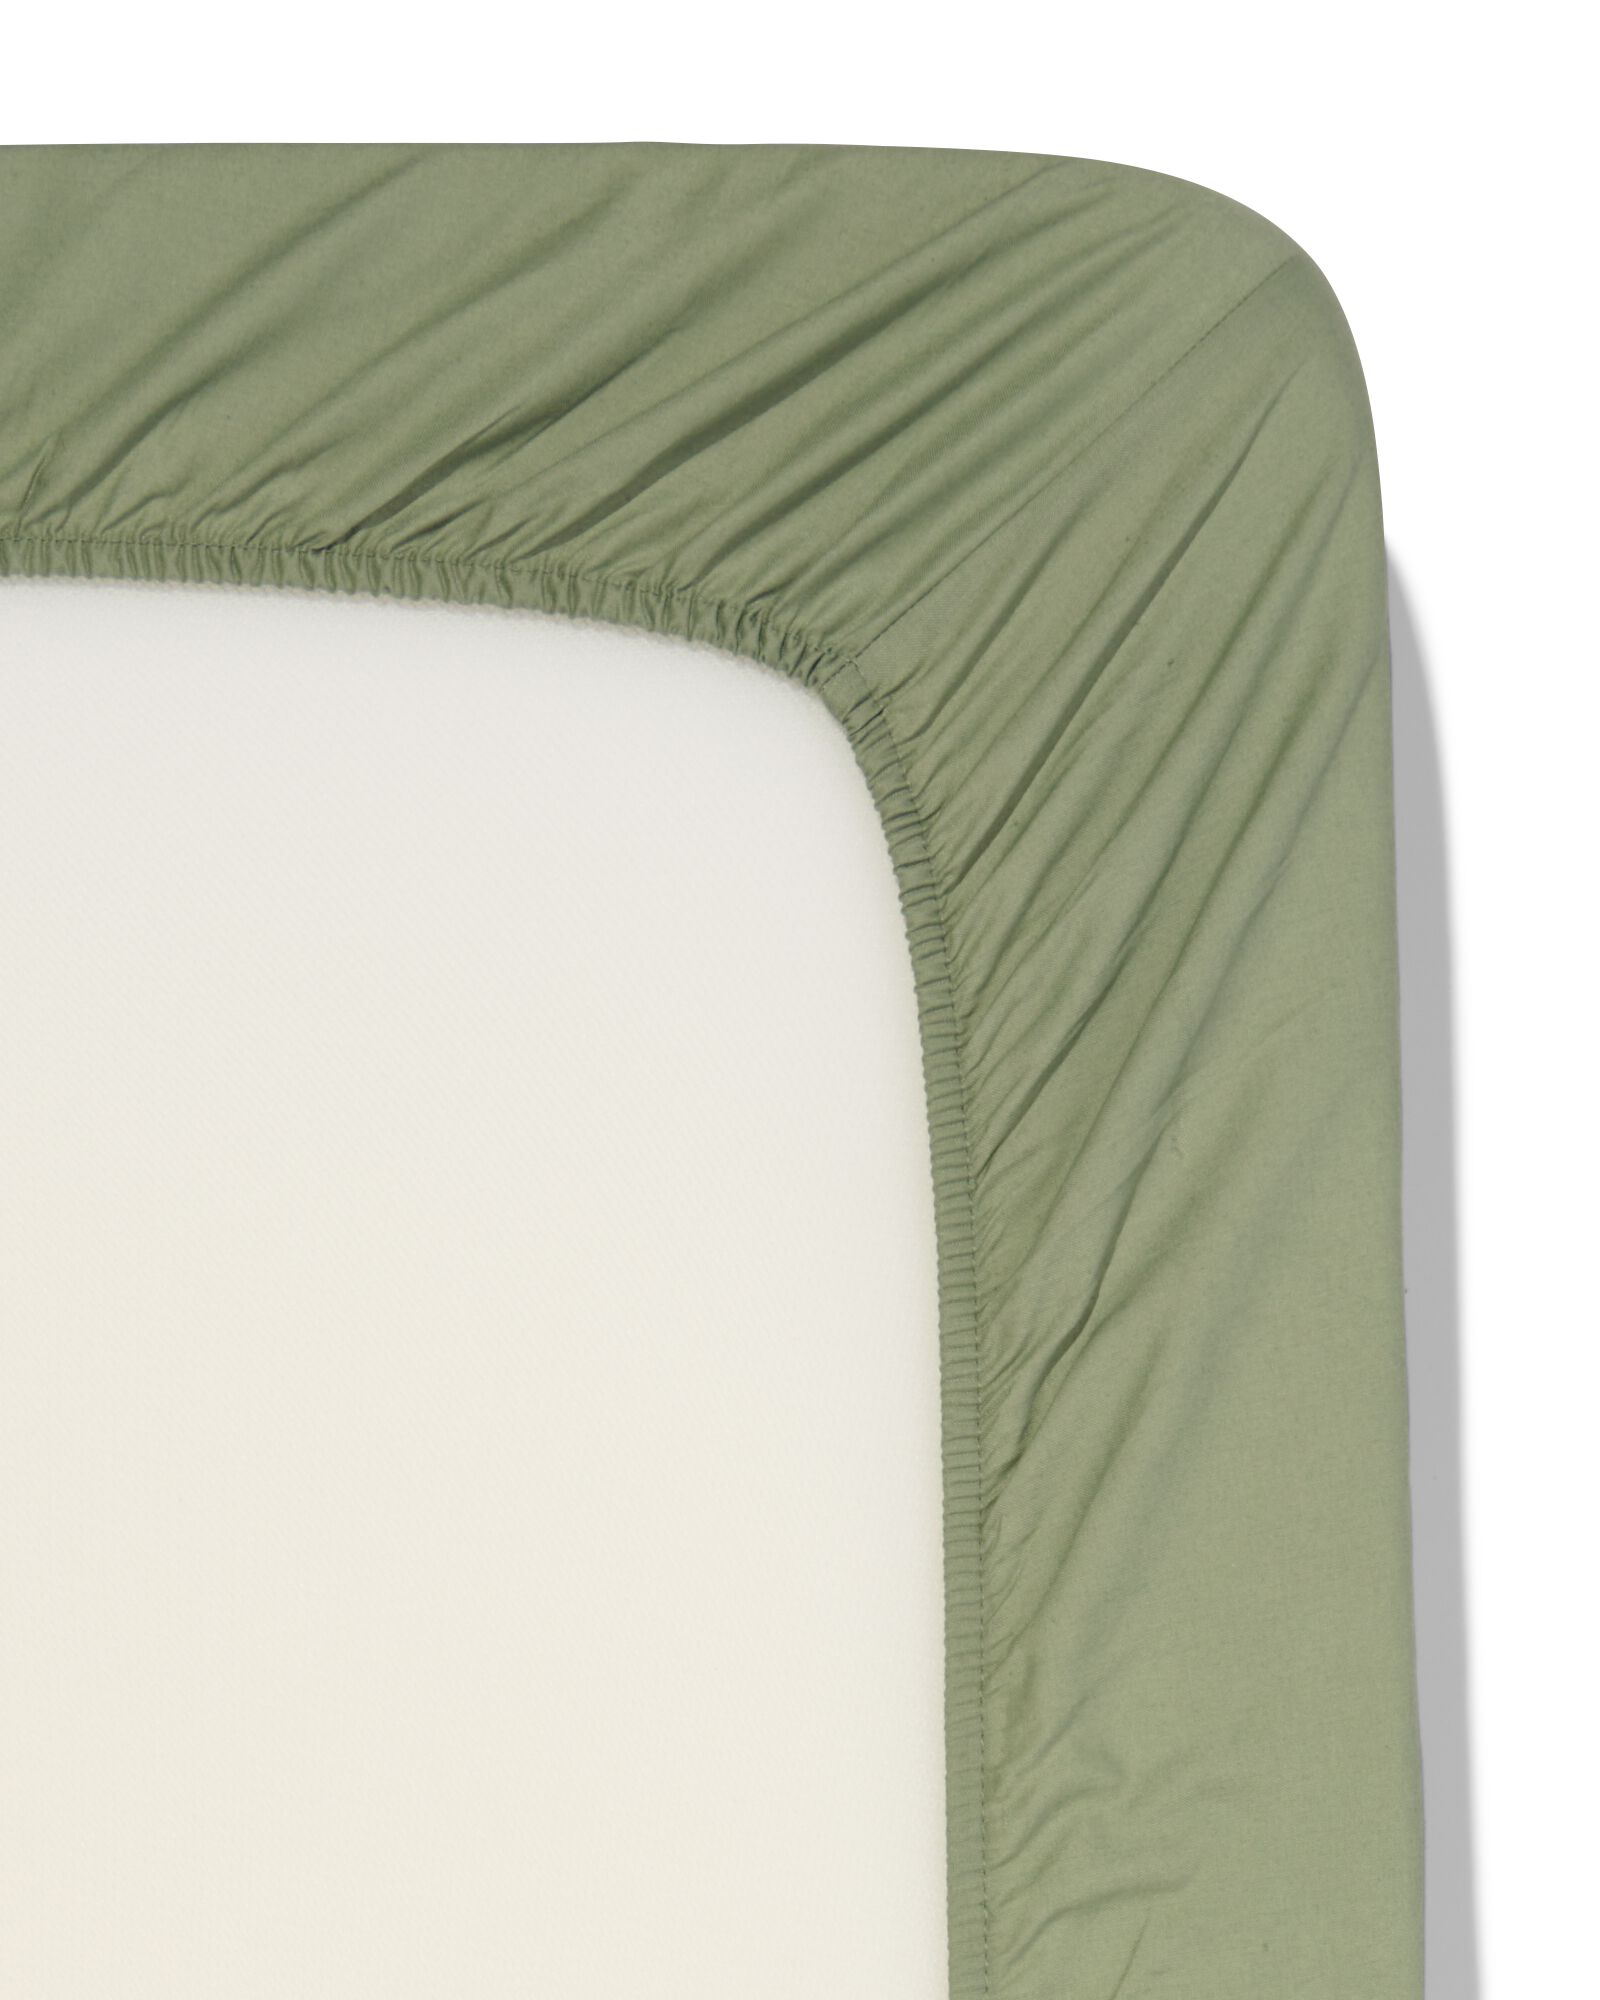 Spannbettlaken, Soft Cotton, 90 x 220 cm, grün - 5190061 - HEMA